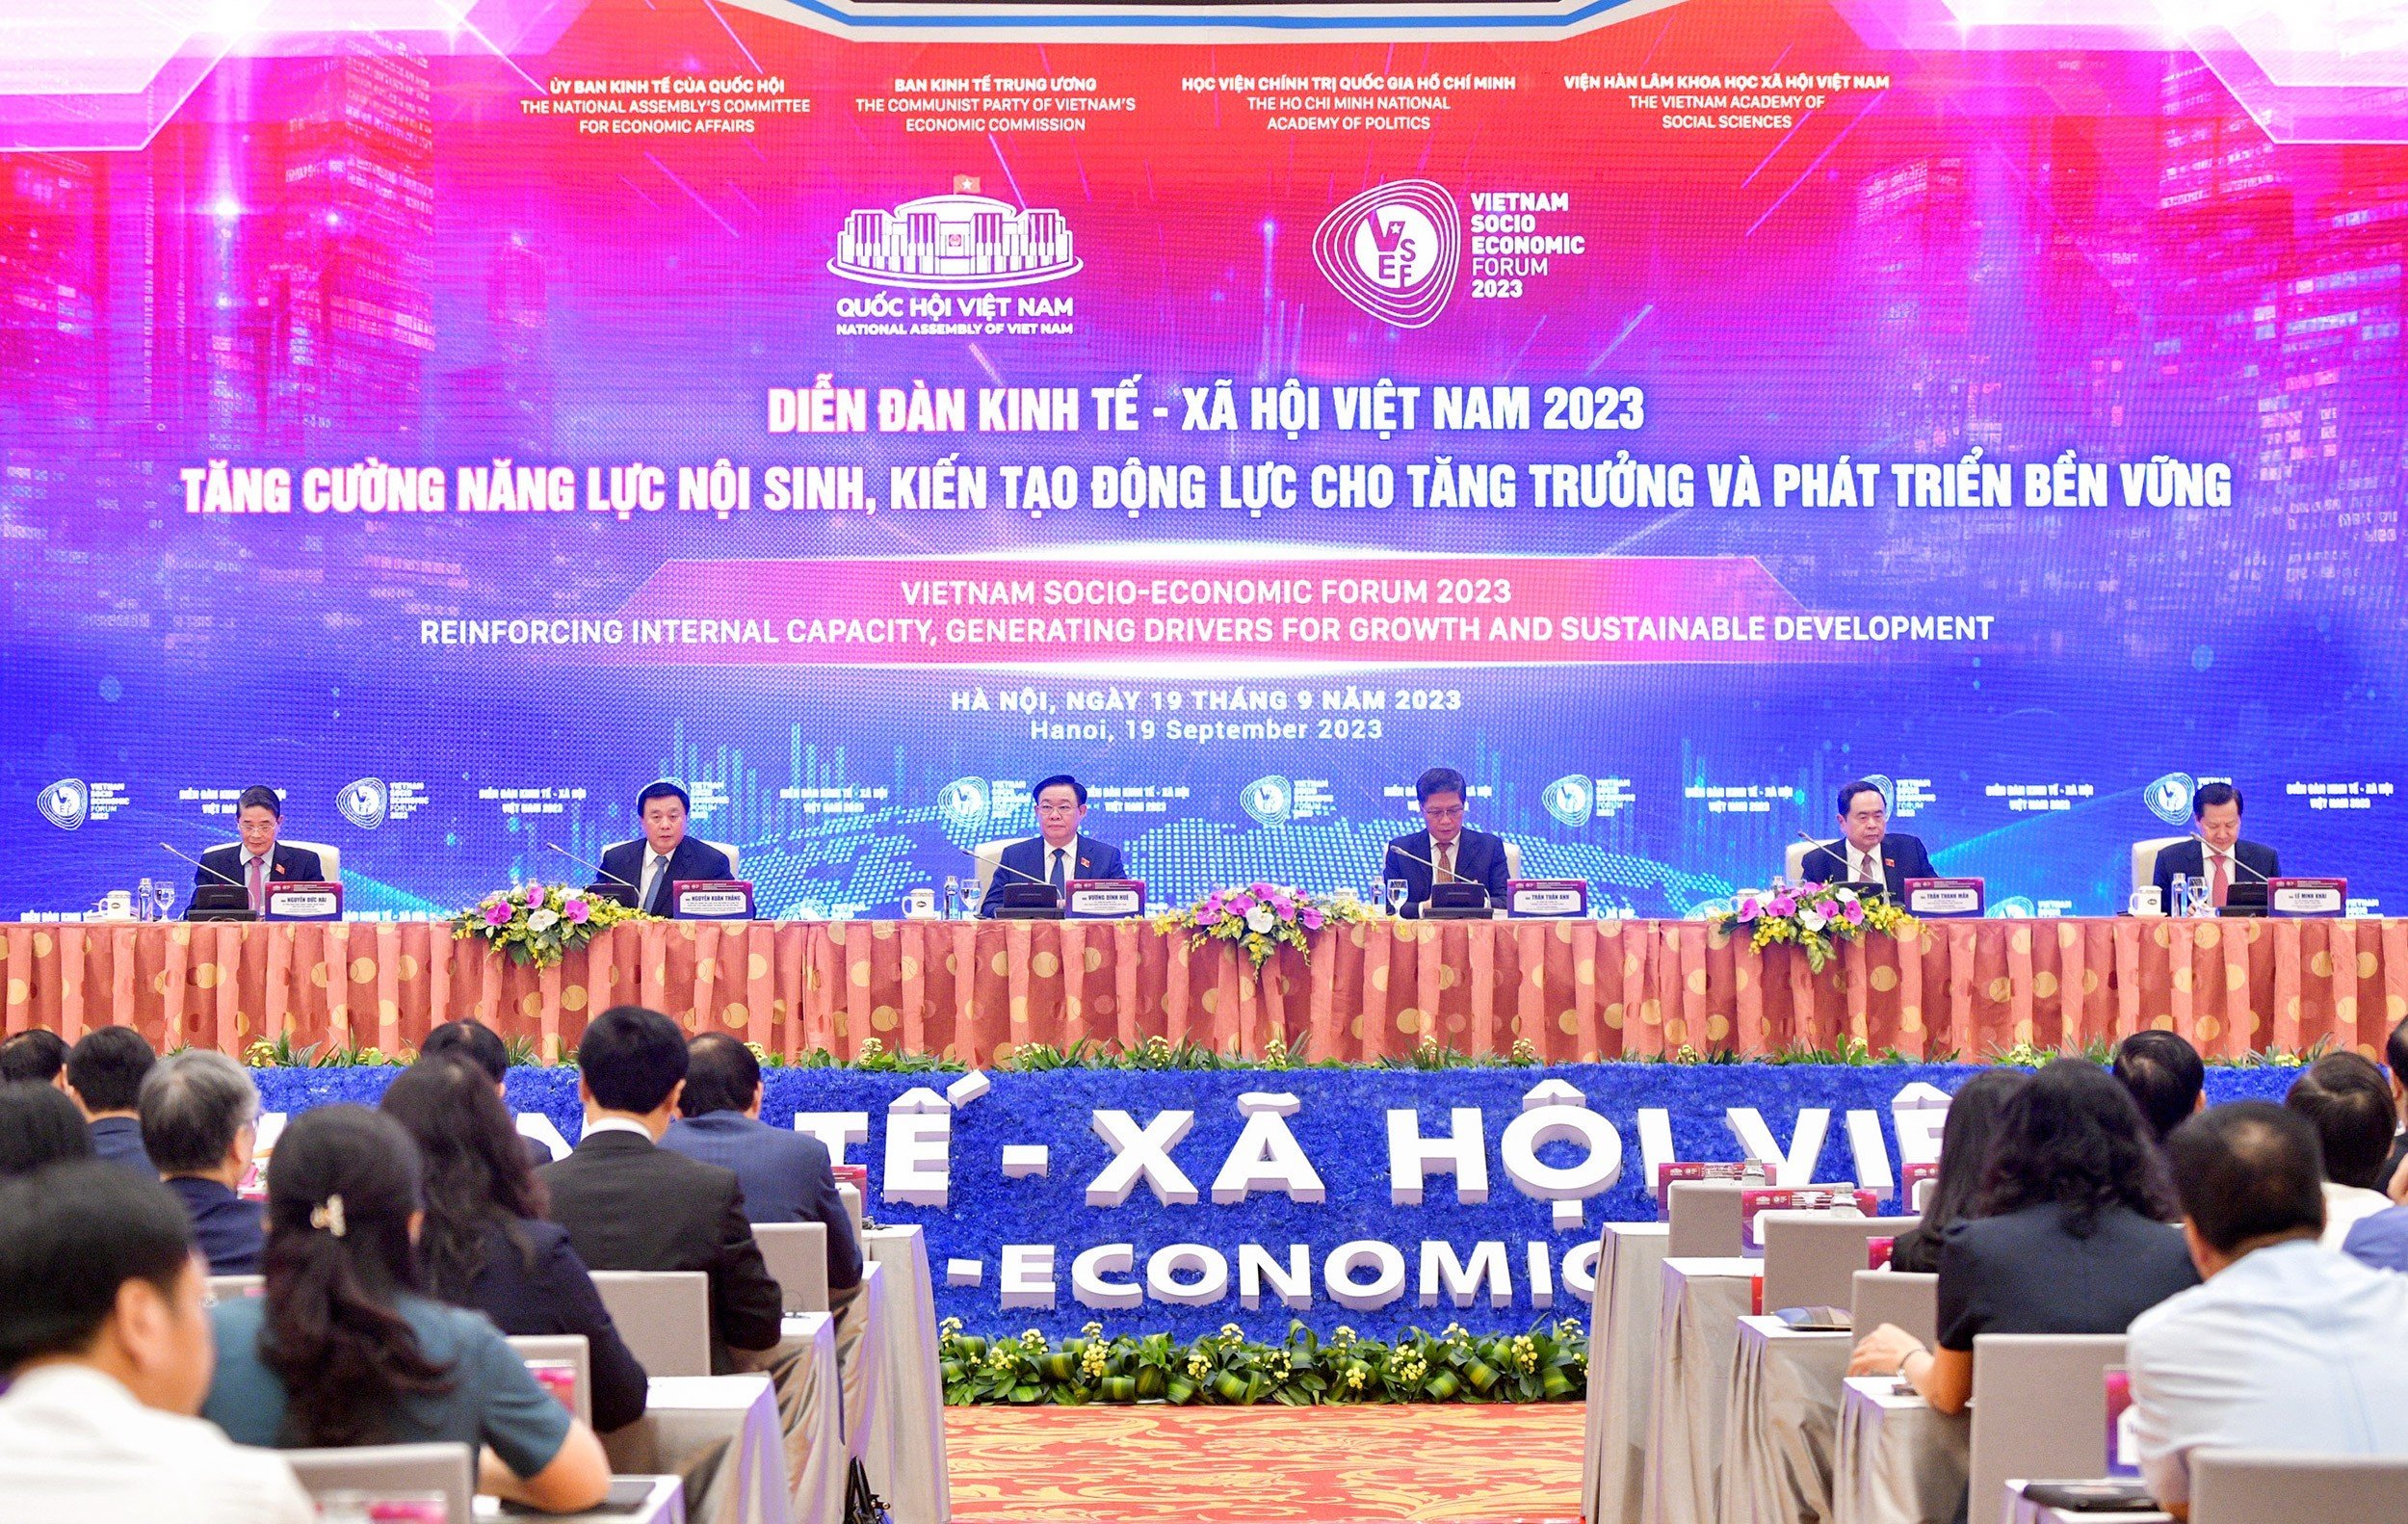 Article Phát biểu của Chủ tịch Quốc hội Vương Đình Huệ khai mạc diễn đàn Kinh tế - Xã hội Việt Nam 2023